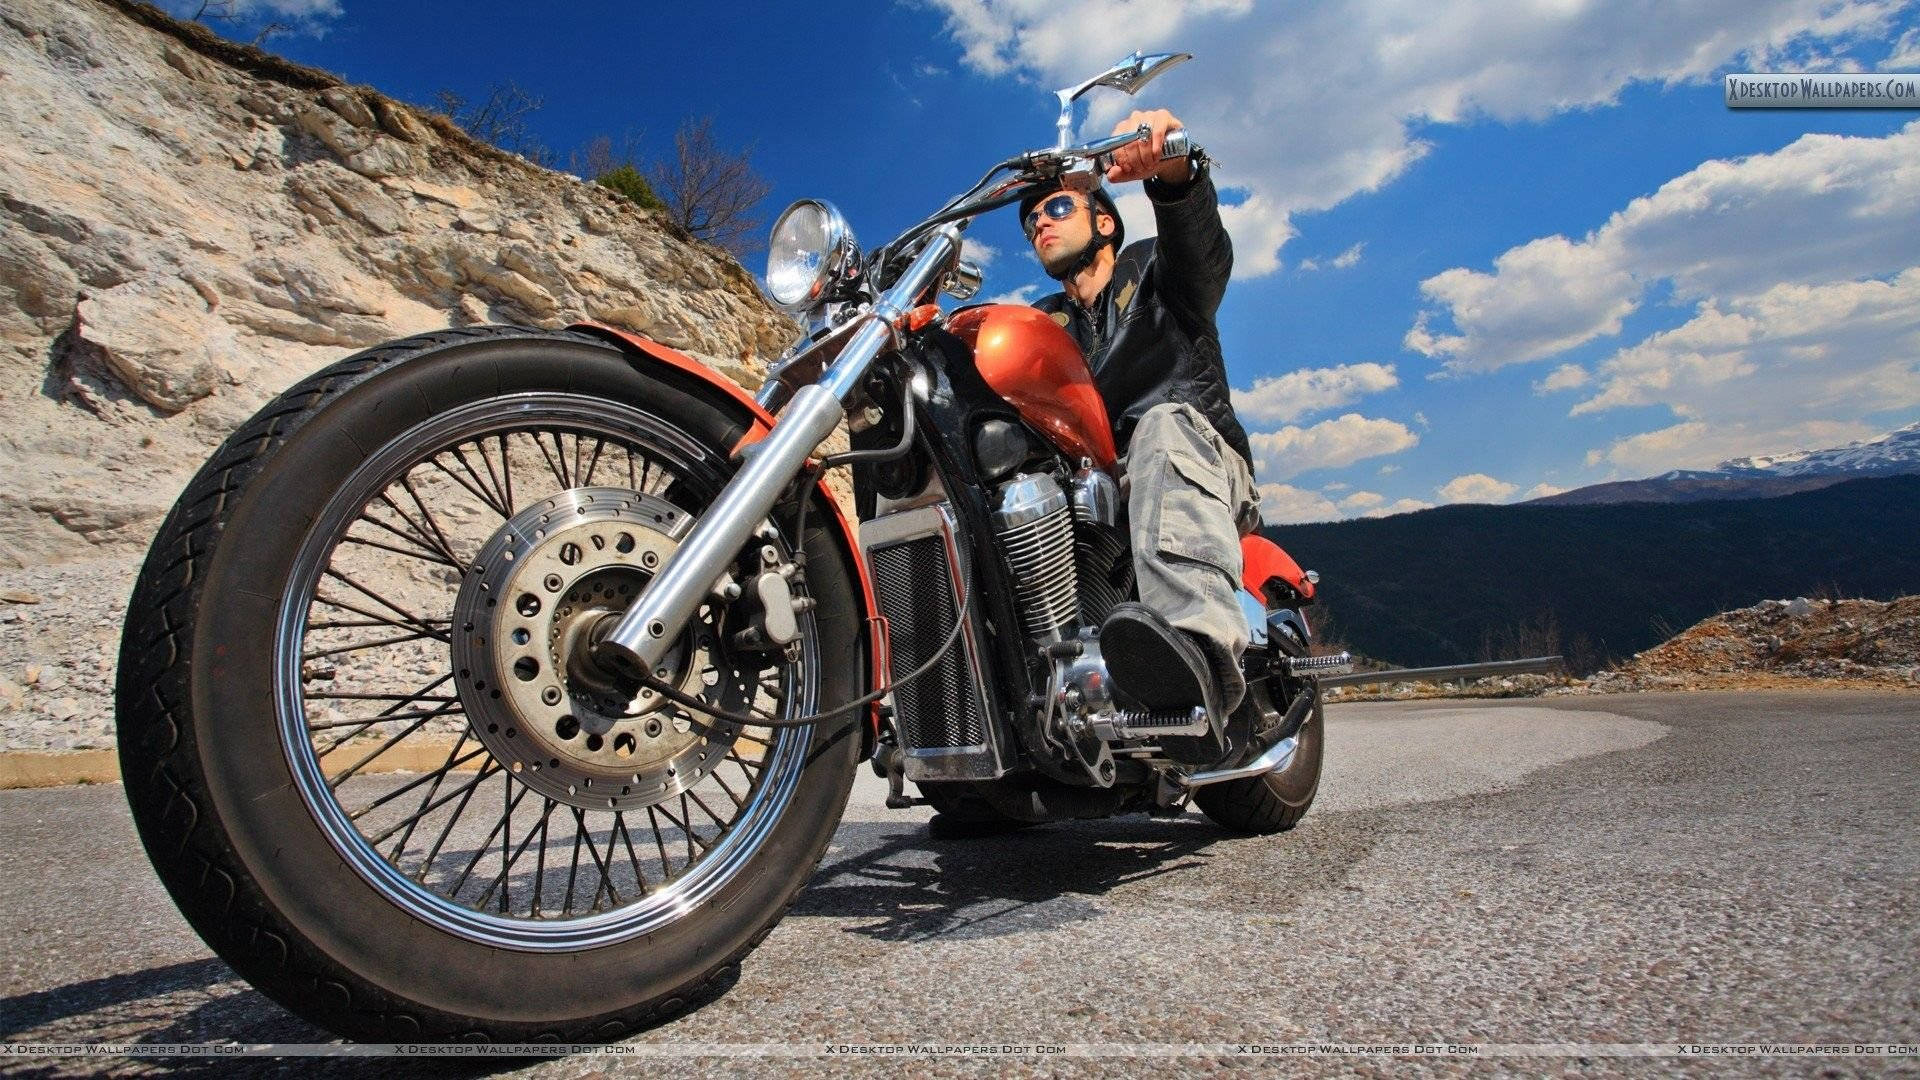 Motocicletaeasy Rider En Una Gran Carretera. Fondo de pantalla